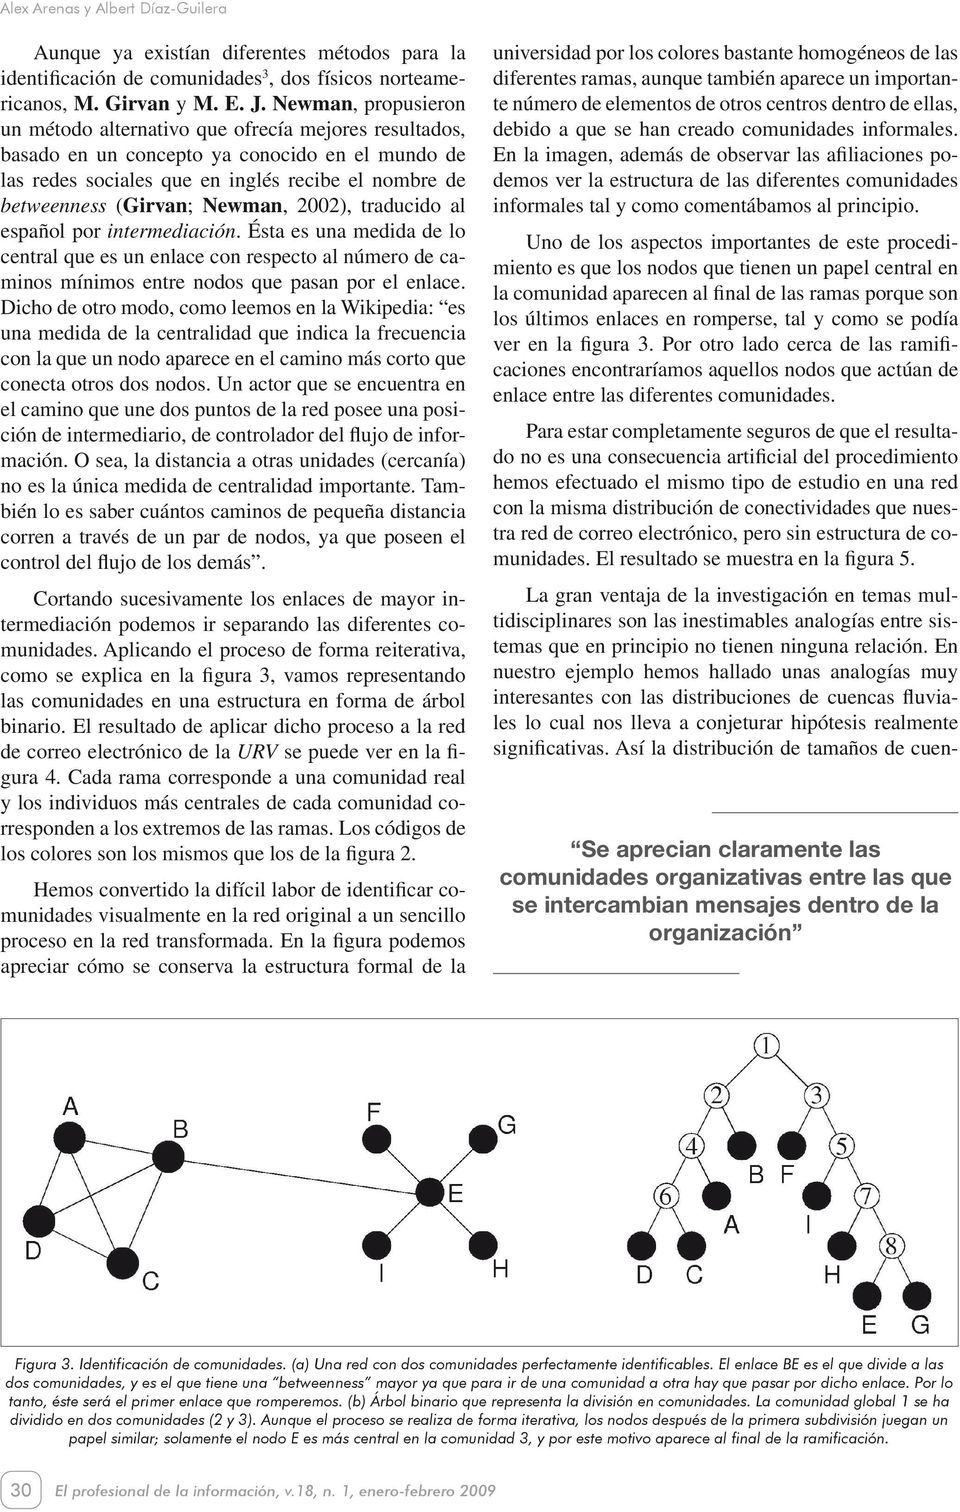 Newman, 2002), traducido al español por intermediación. Ésta es una medida de lo central que es un enlace con respecto al número de caminos mínimos entre nodos que pasan por el enlace.